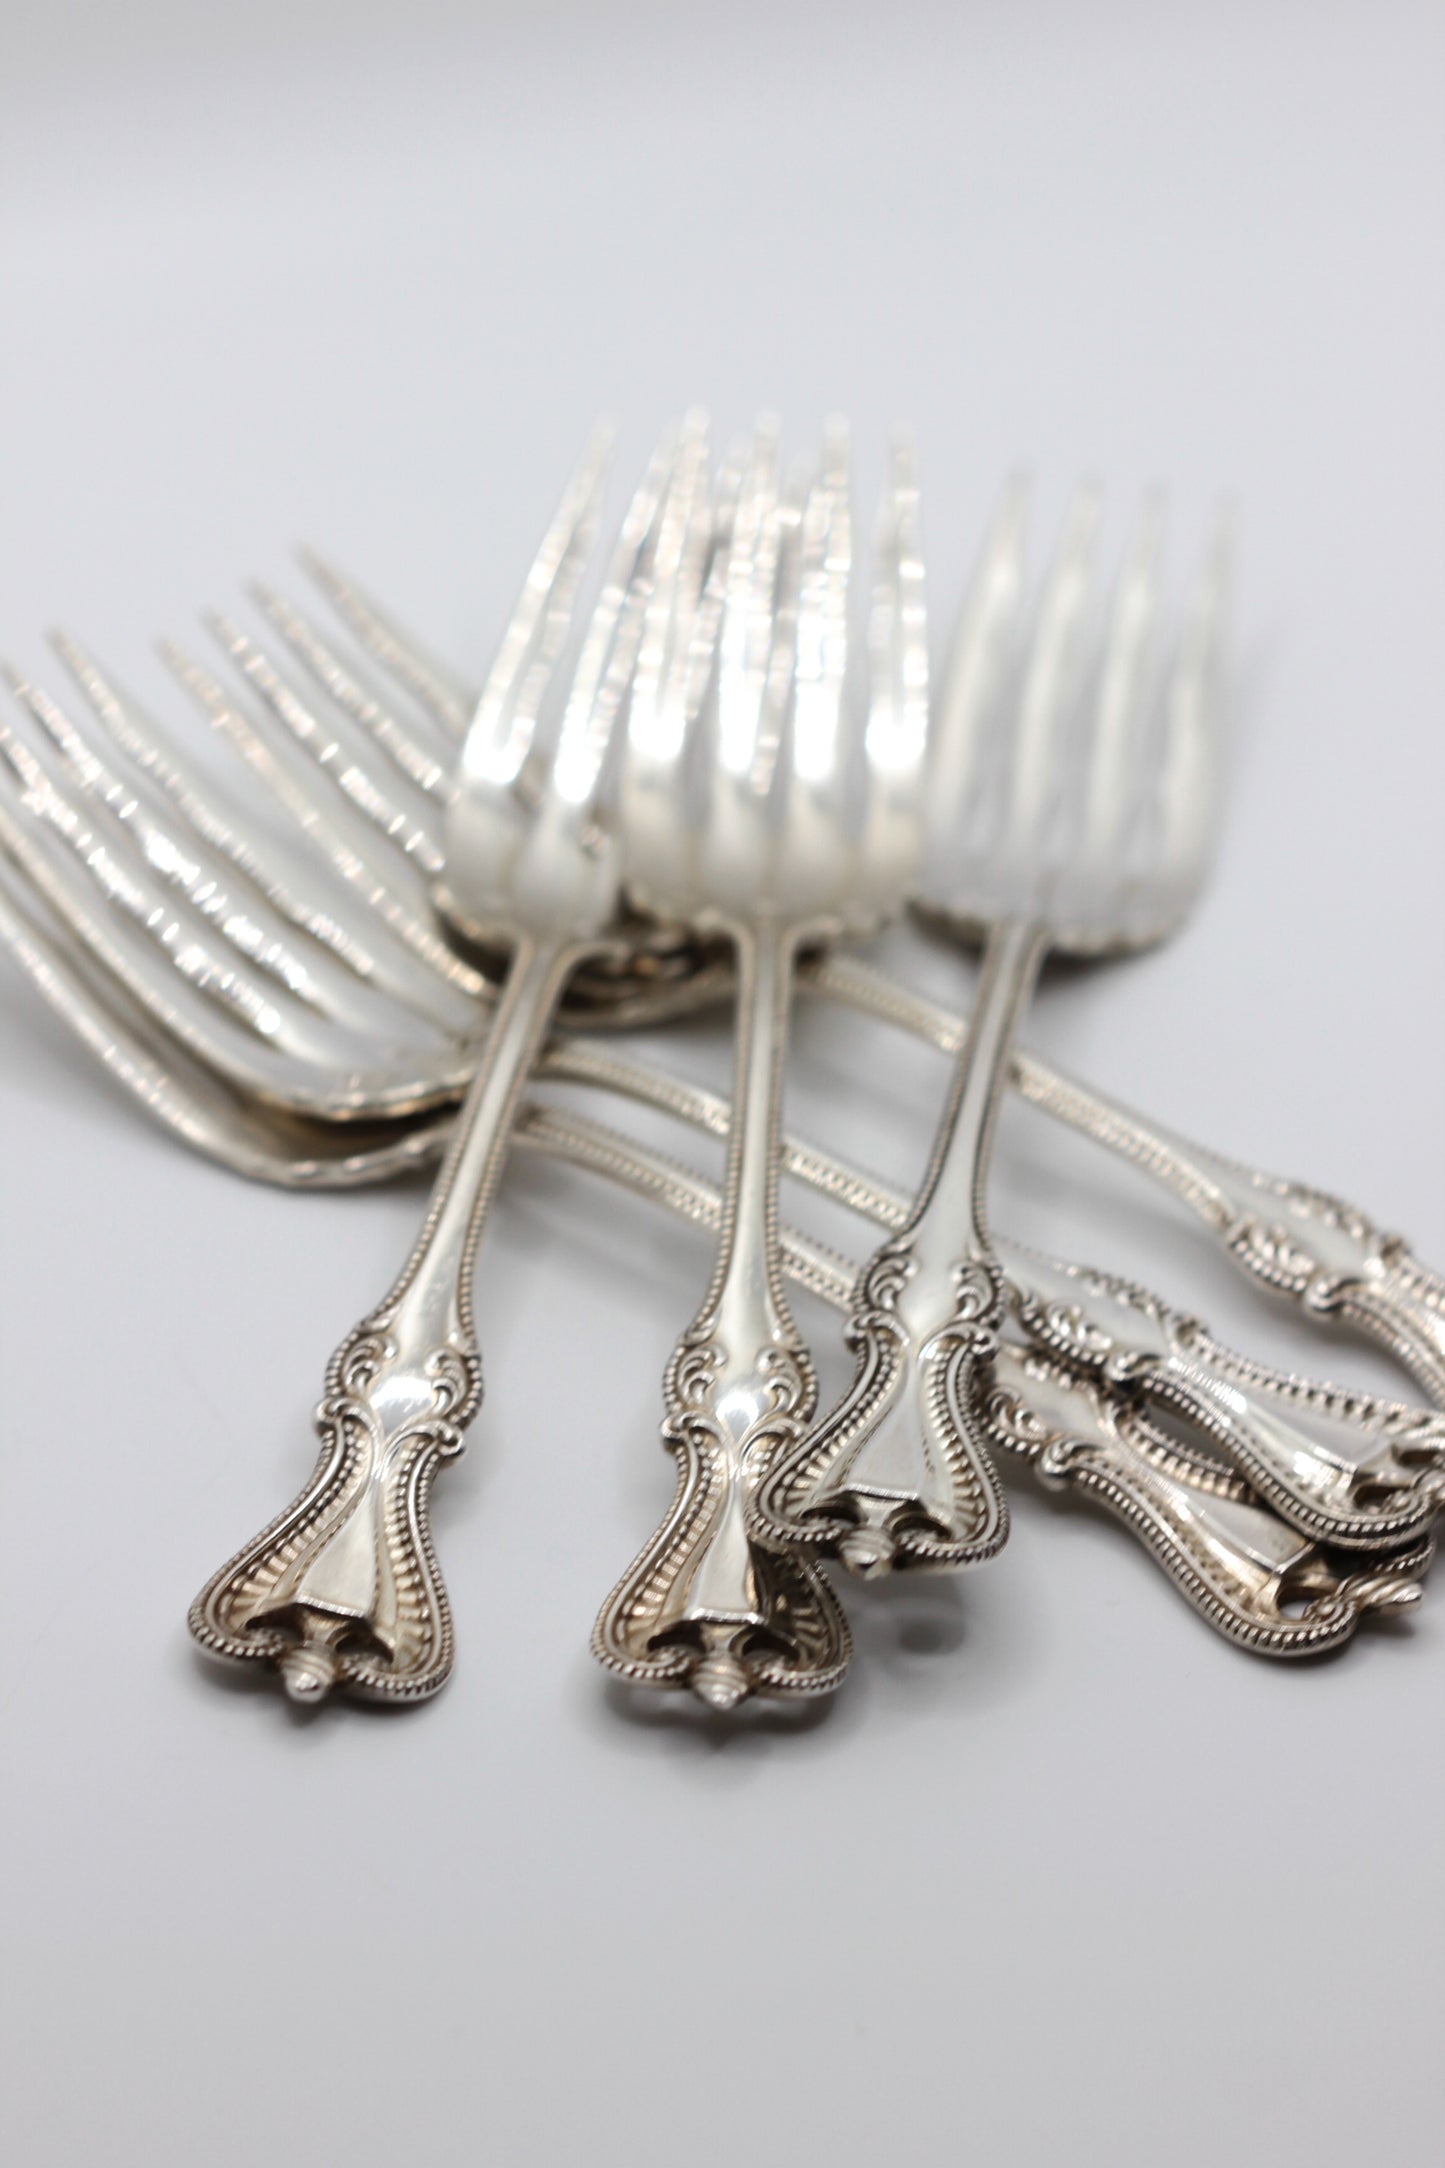 Silver desert forks